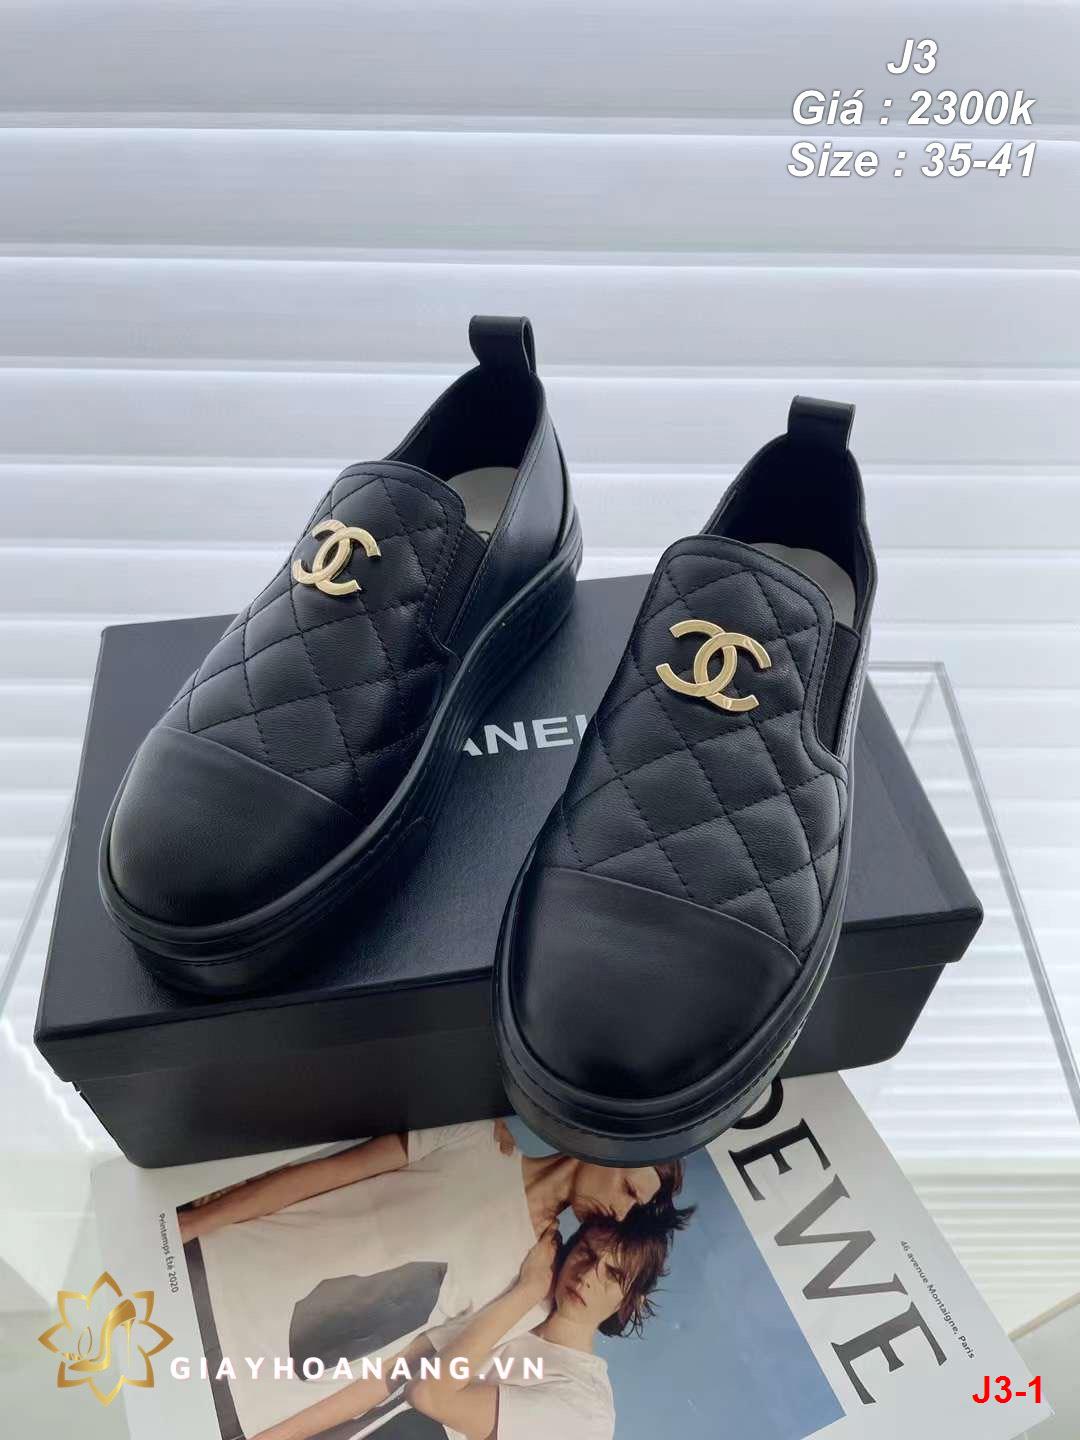 J3-1 Chanel giày lười siêu cấp